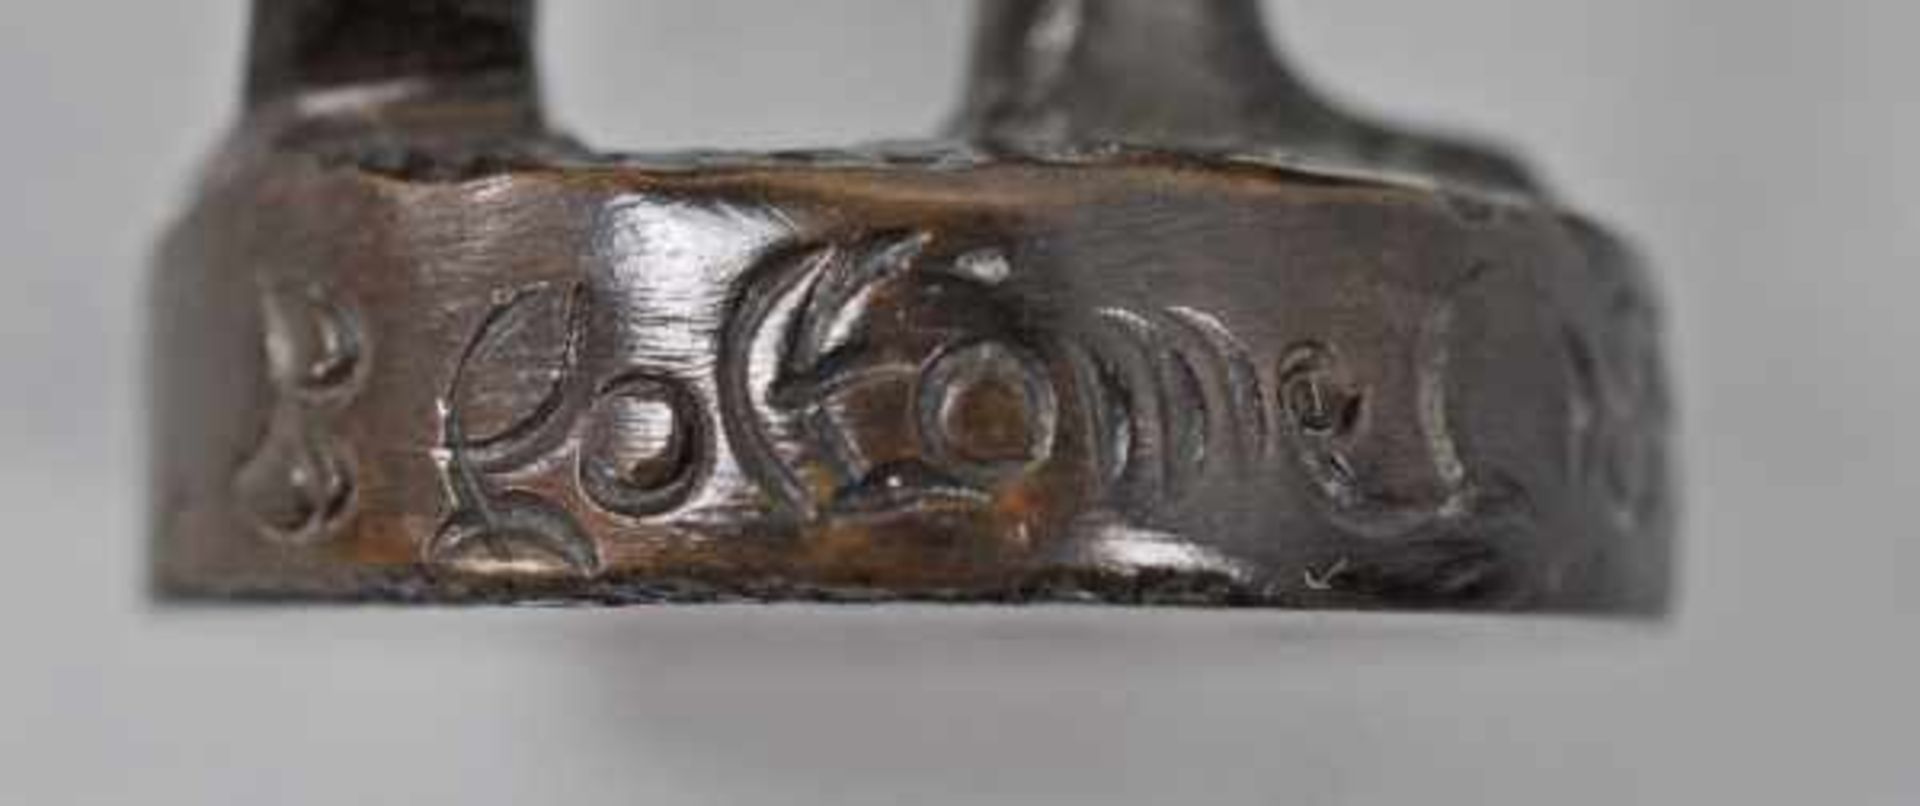 FISCHERJUNGE mit Angel u. Korb, auf runder Basis, signiert "B. Coltomel", Bronze patiniert, H - Image 4 of 6